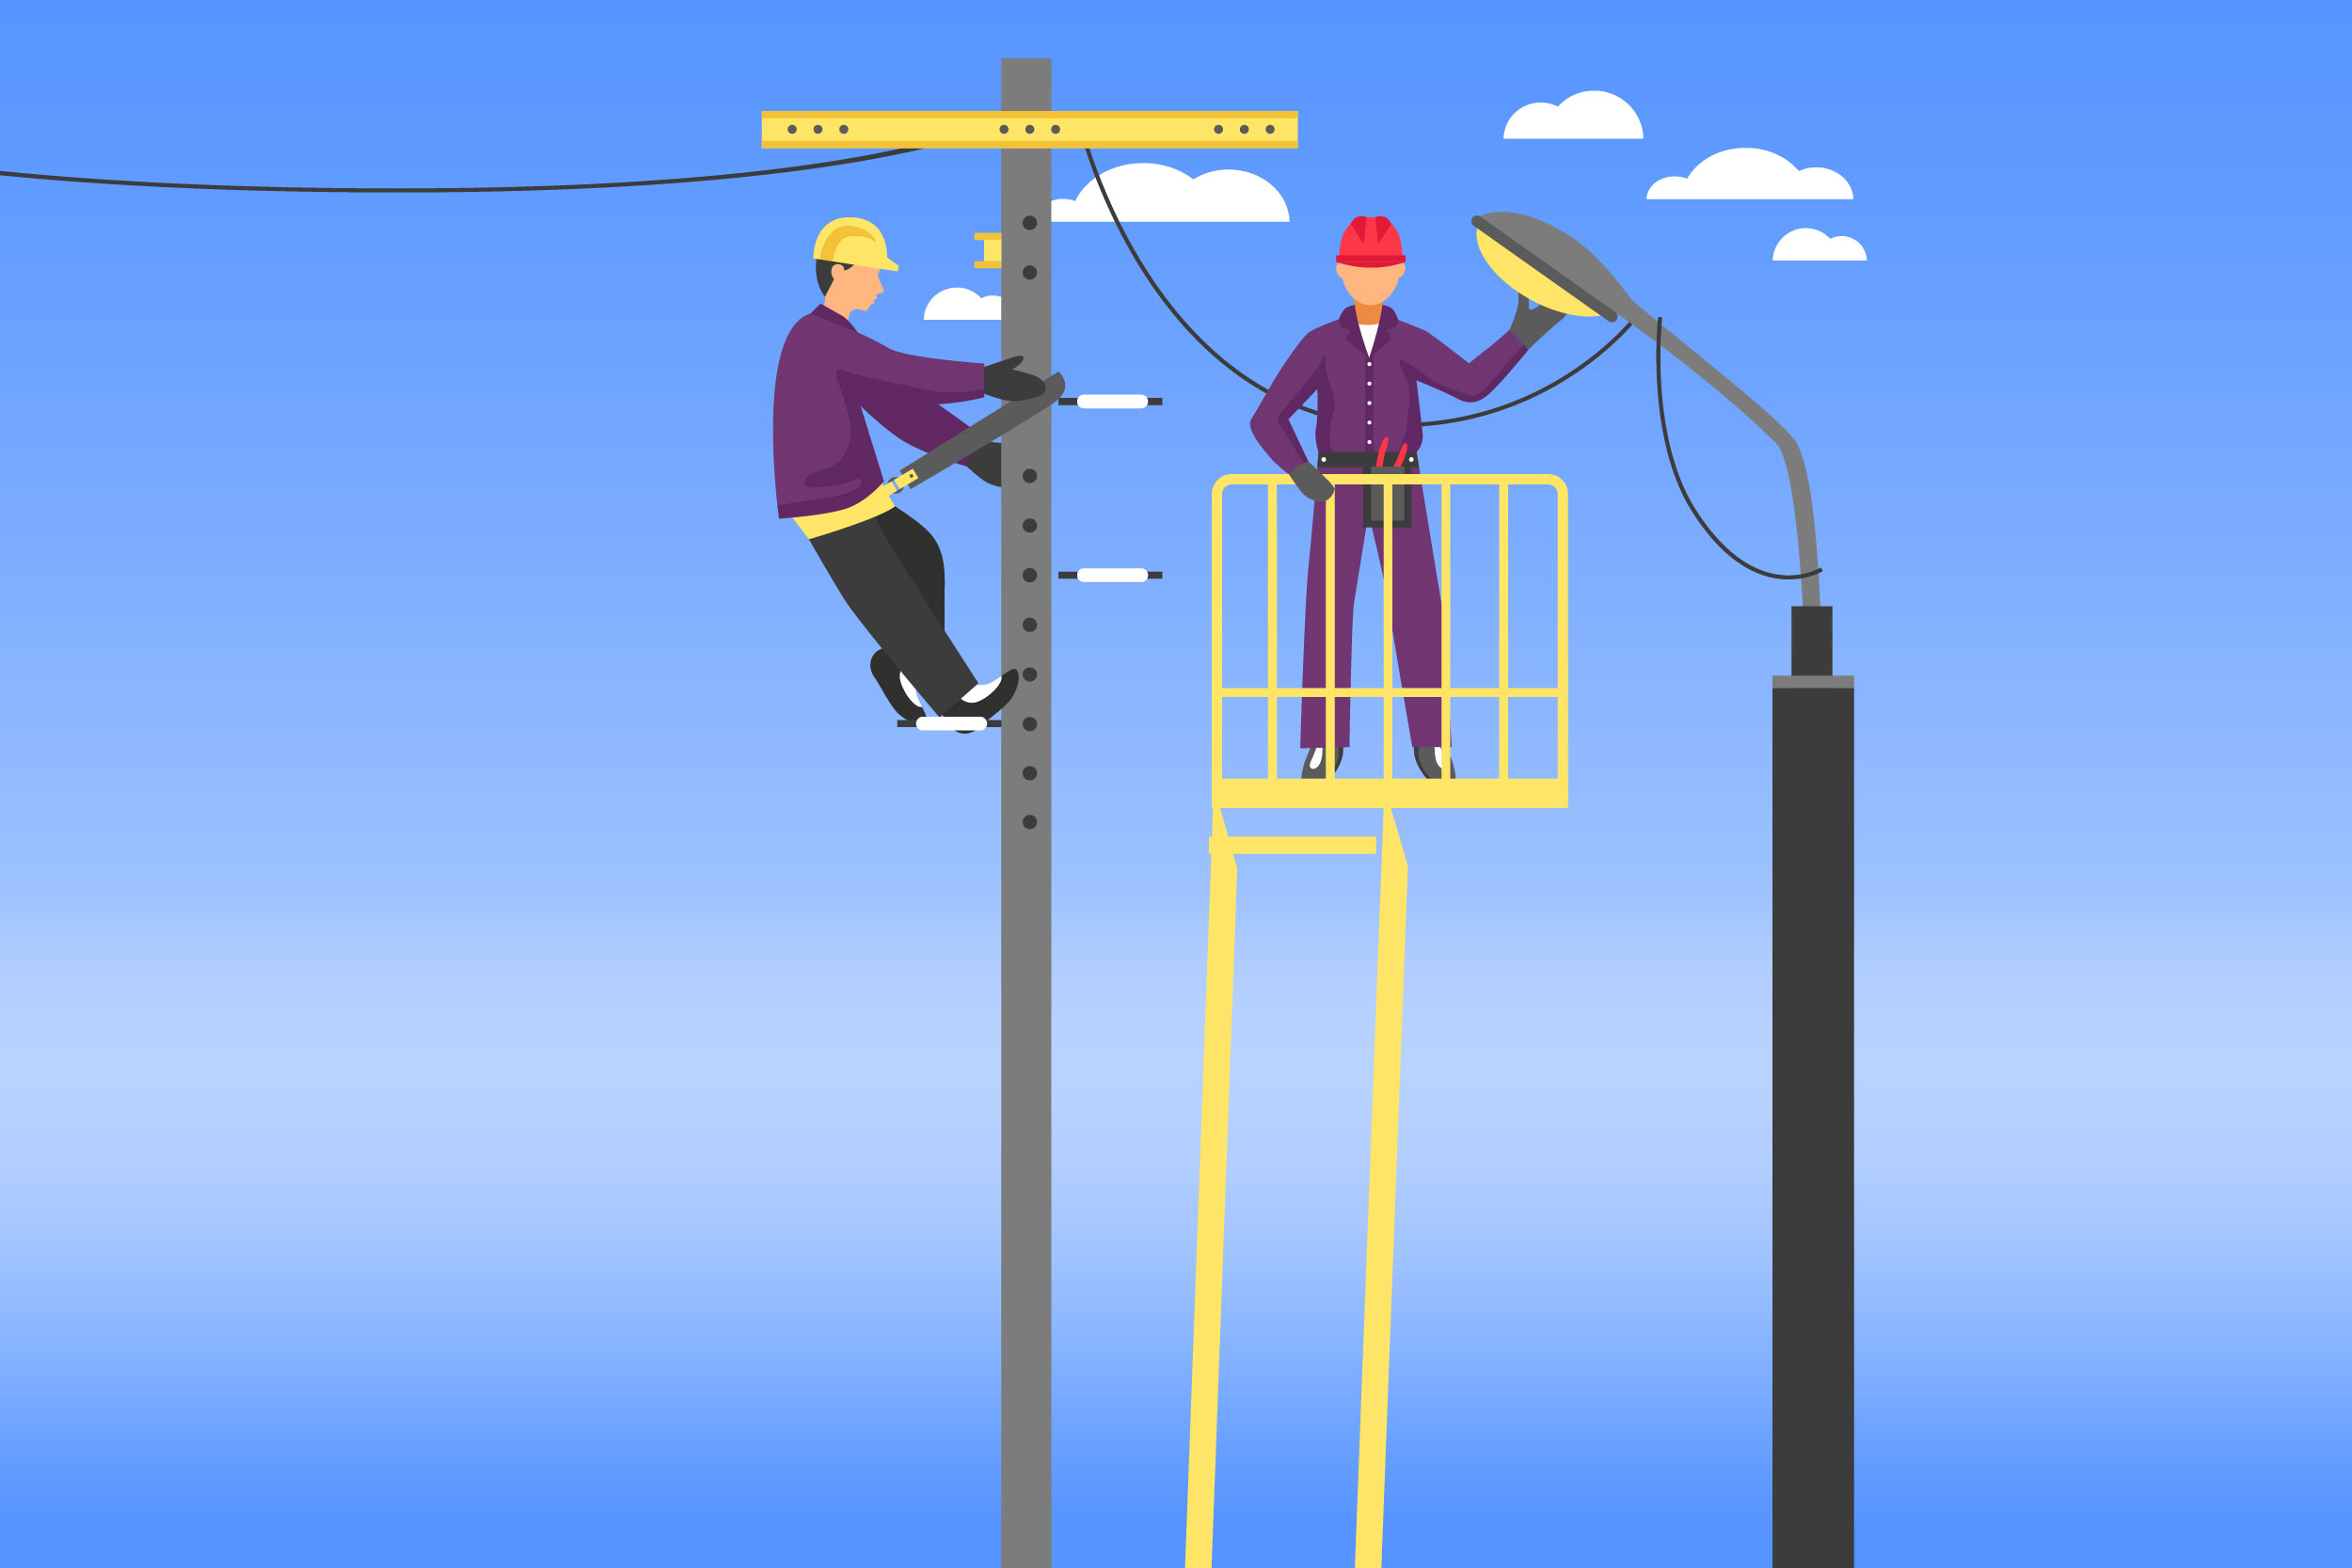 Ilustração colorida representa dois homens no alto de uma escada consertando um poste de iluminação pública